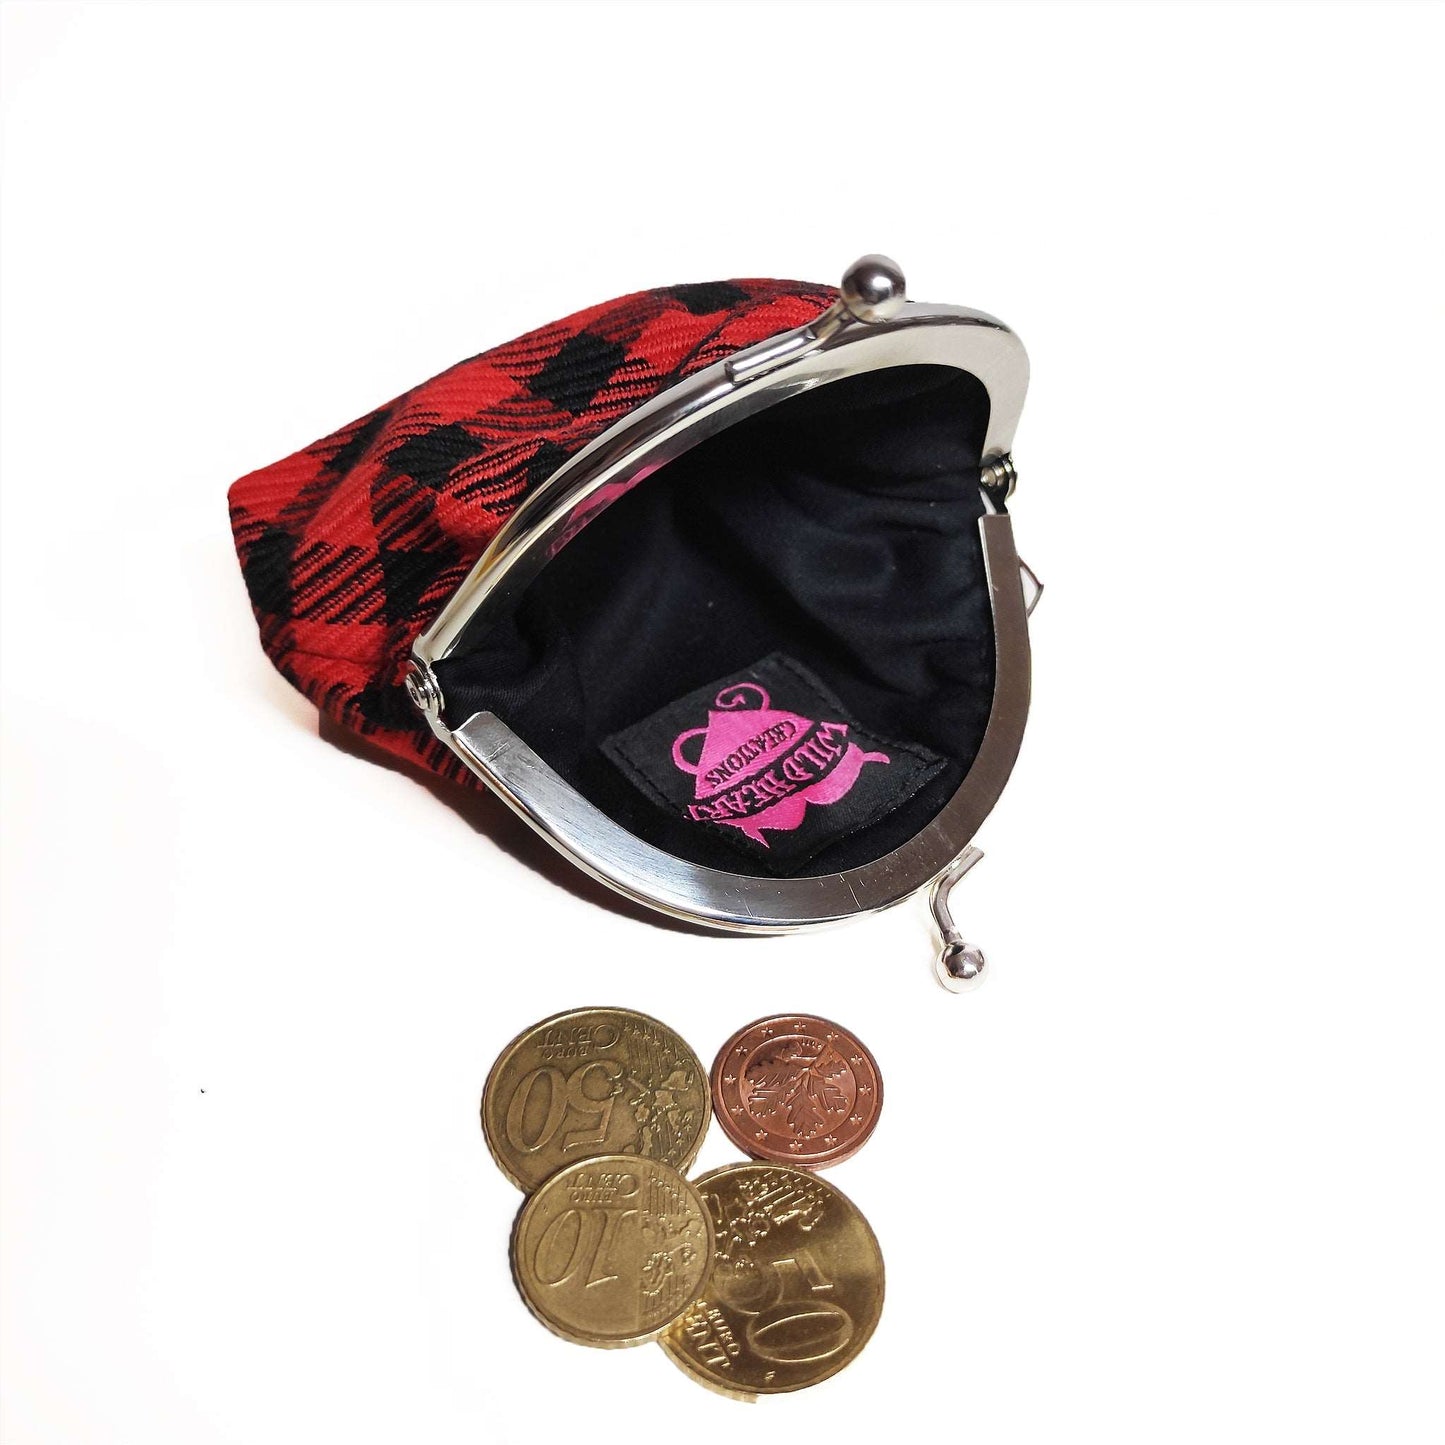 Geldbörse in Rot schwarzem Karomuster, welche mit einem Kuss-Verschluss schließt.